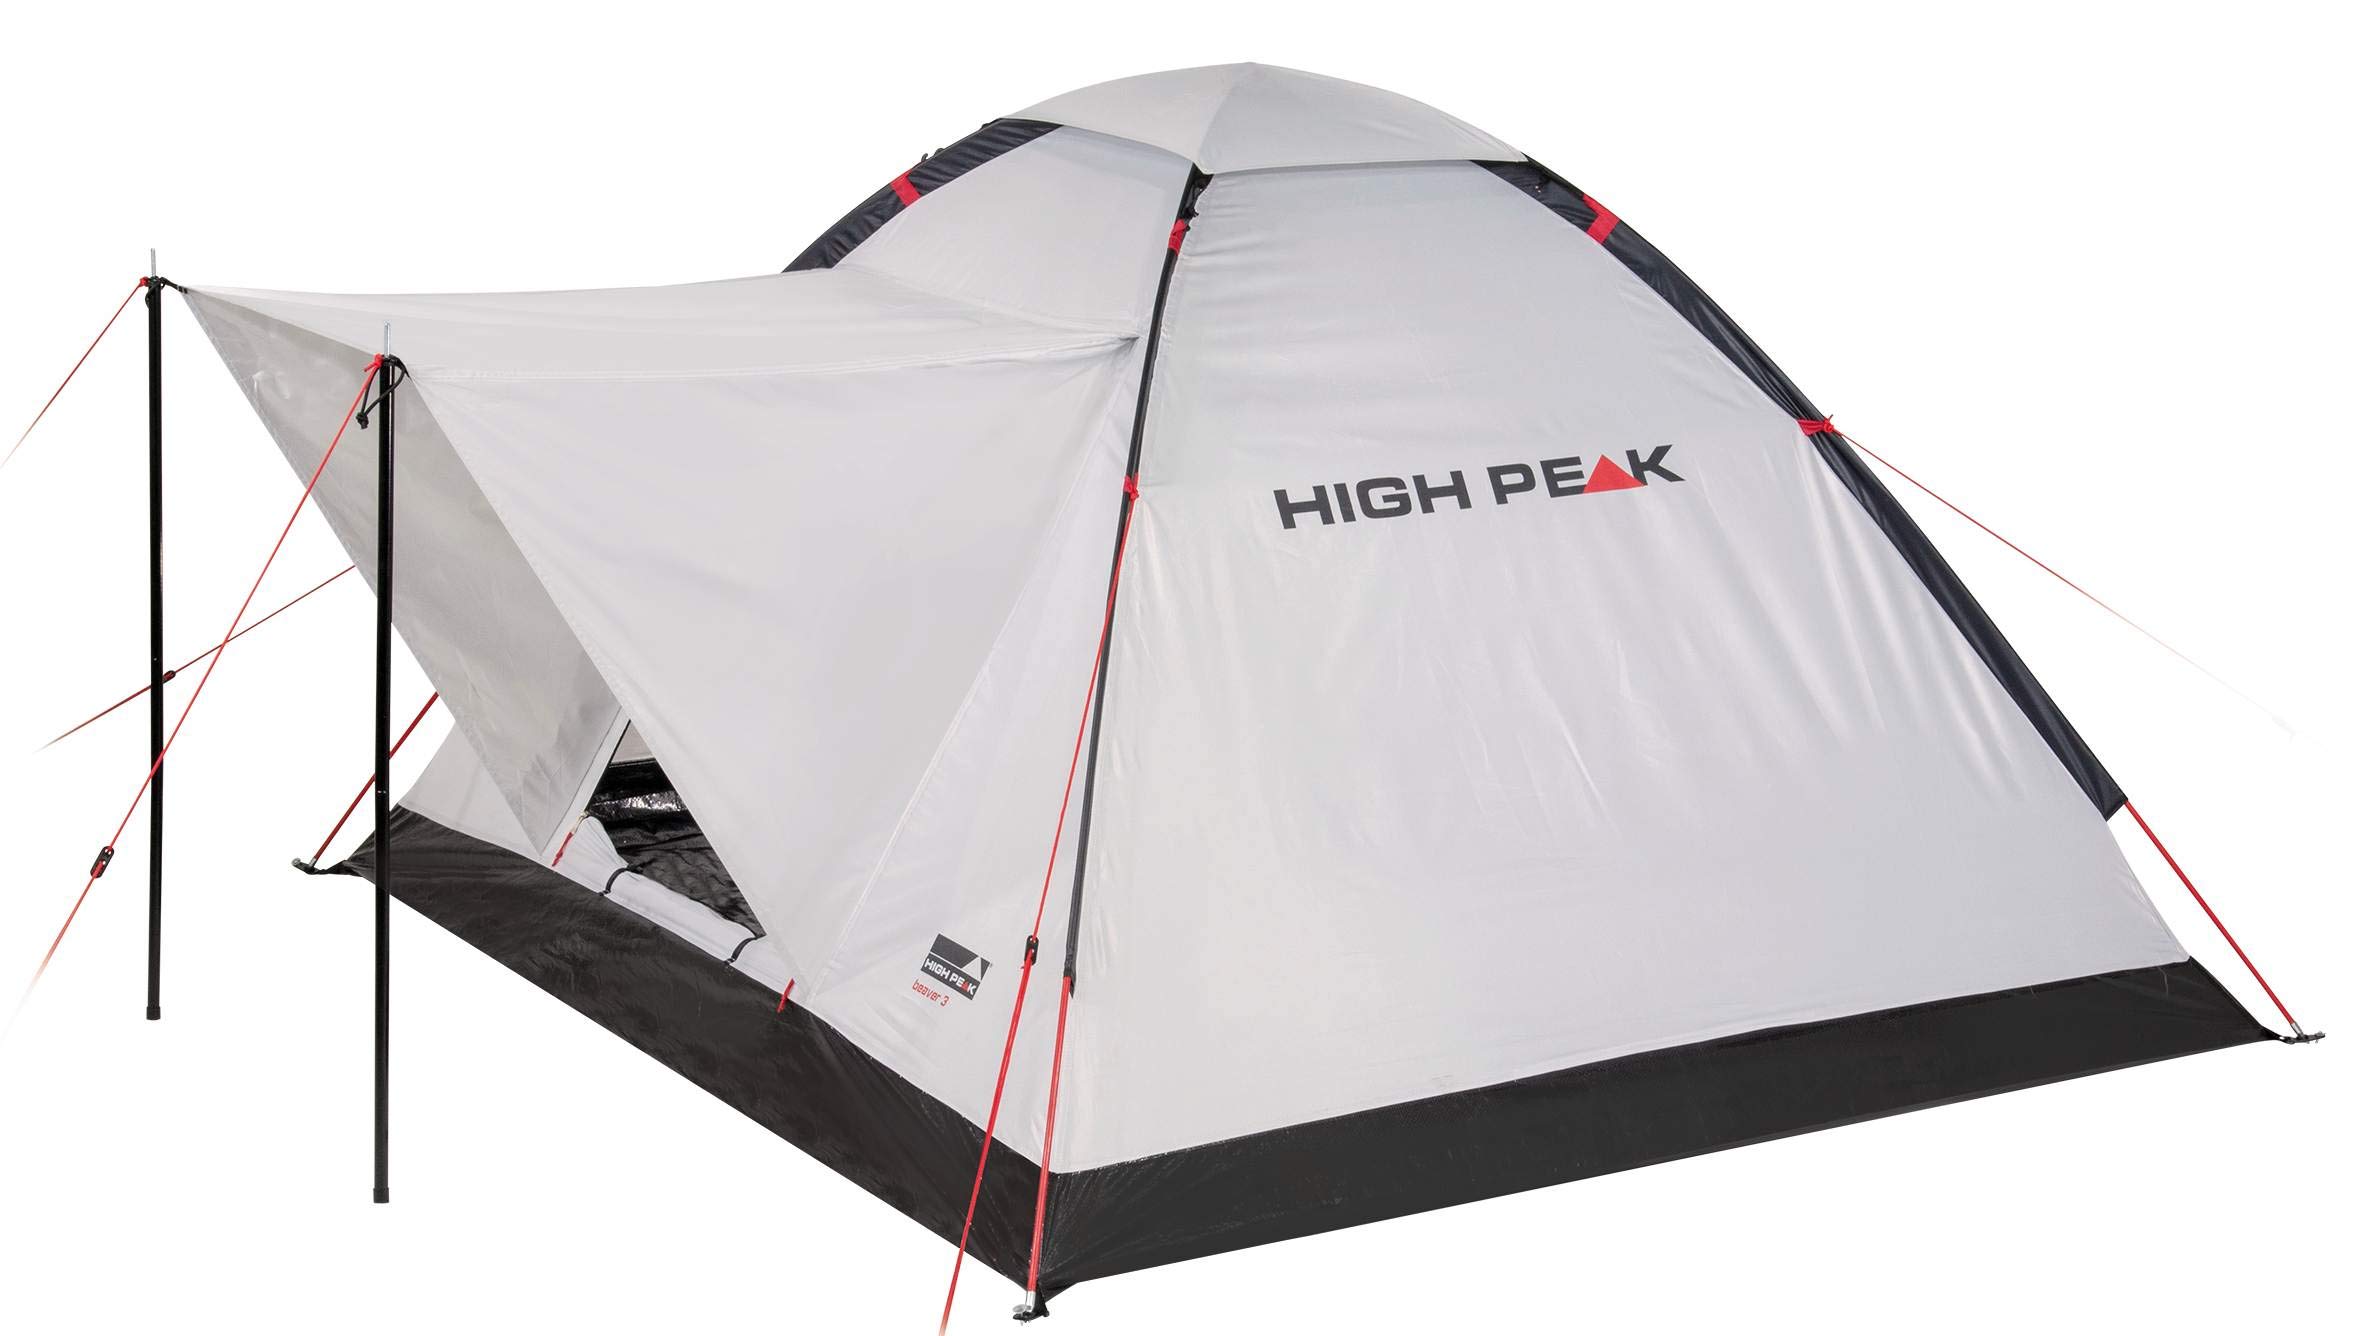 High Peak Kuppelzelt Beaver 3, Campingzelt für 3 Personen, Igluzelt mit Wetterschutz-Dach, Festivalzelt mit Wannenboden, 1500mm wasserdicht, UV 60 Sonnenschutz, Lüftung, Moskitoschutz, Freistehend